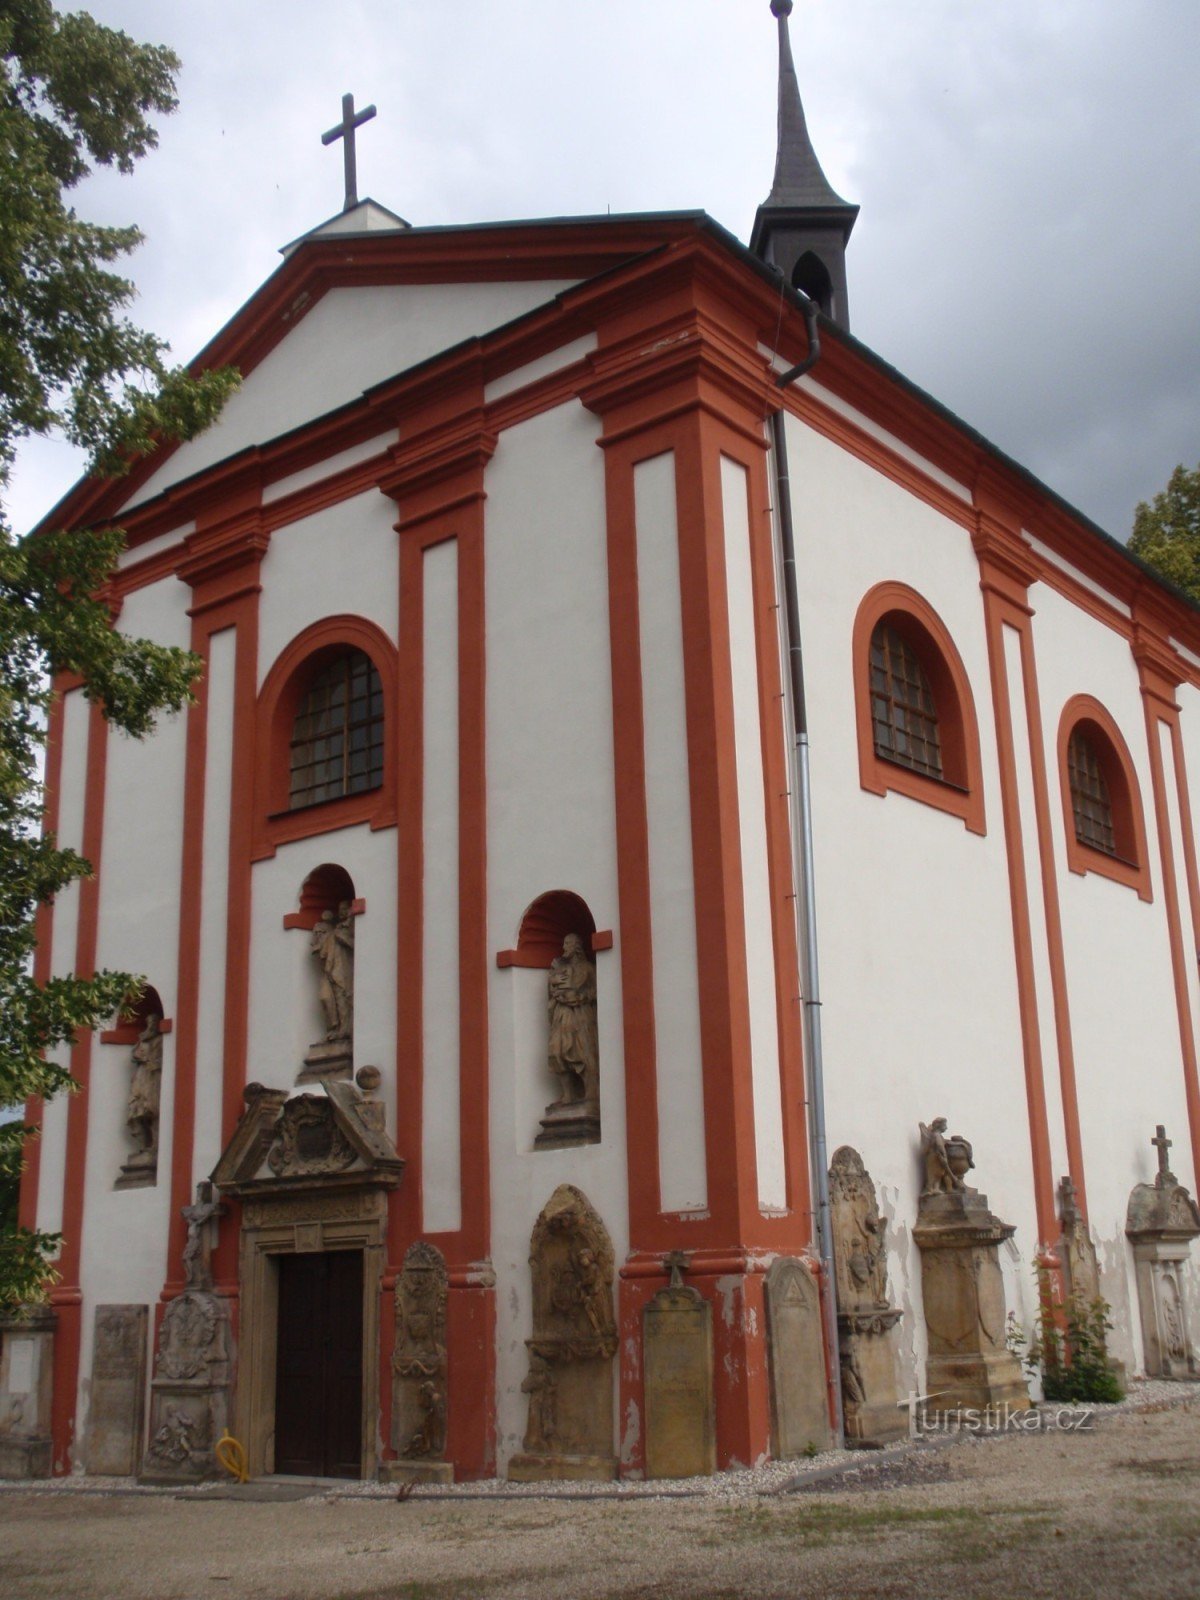 Lanškroun - église du cimetière de St. Anne